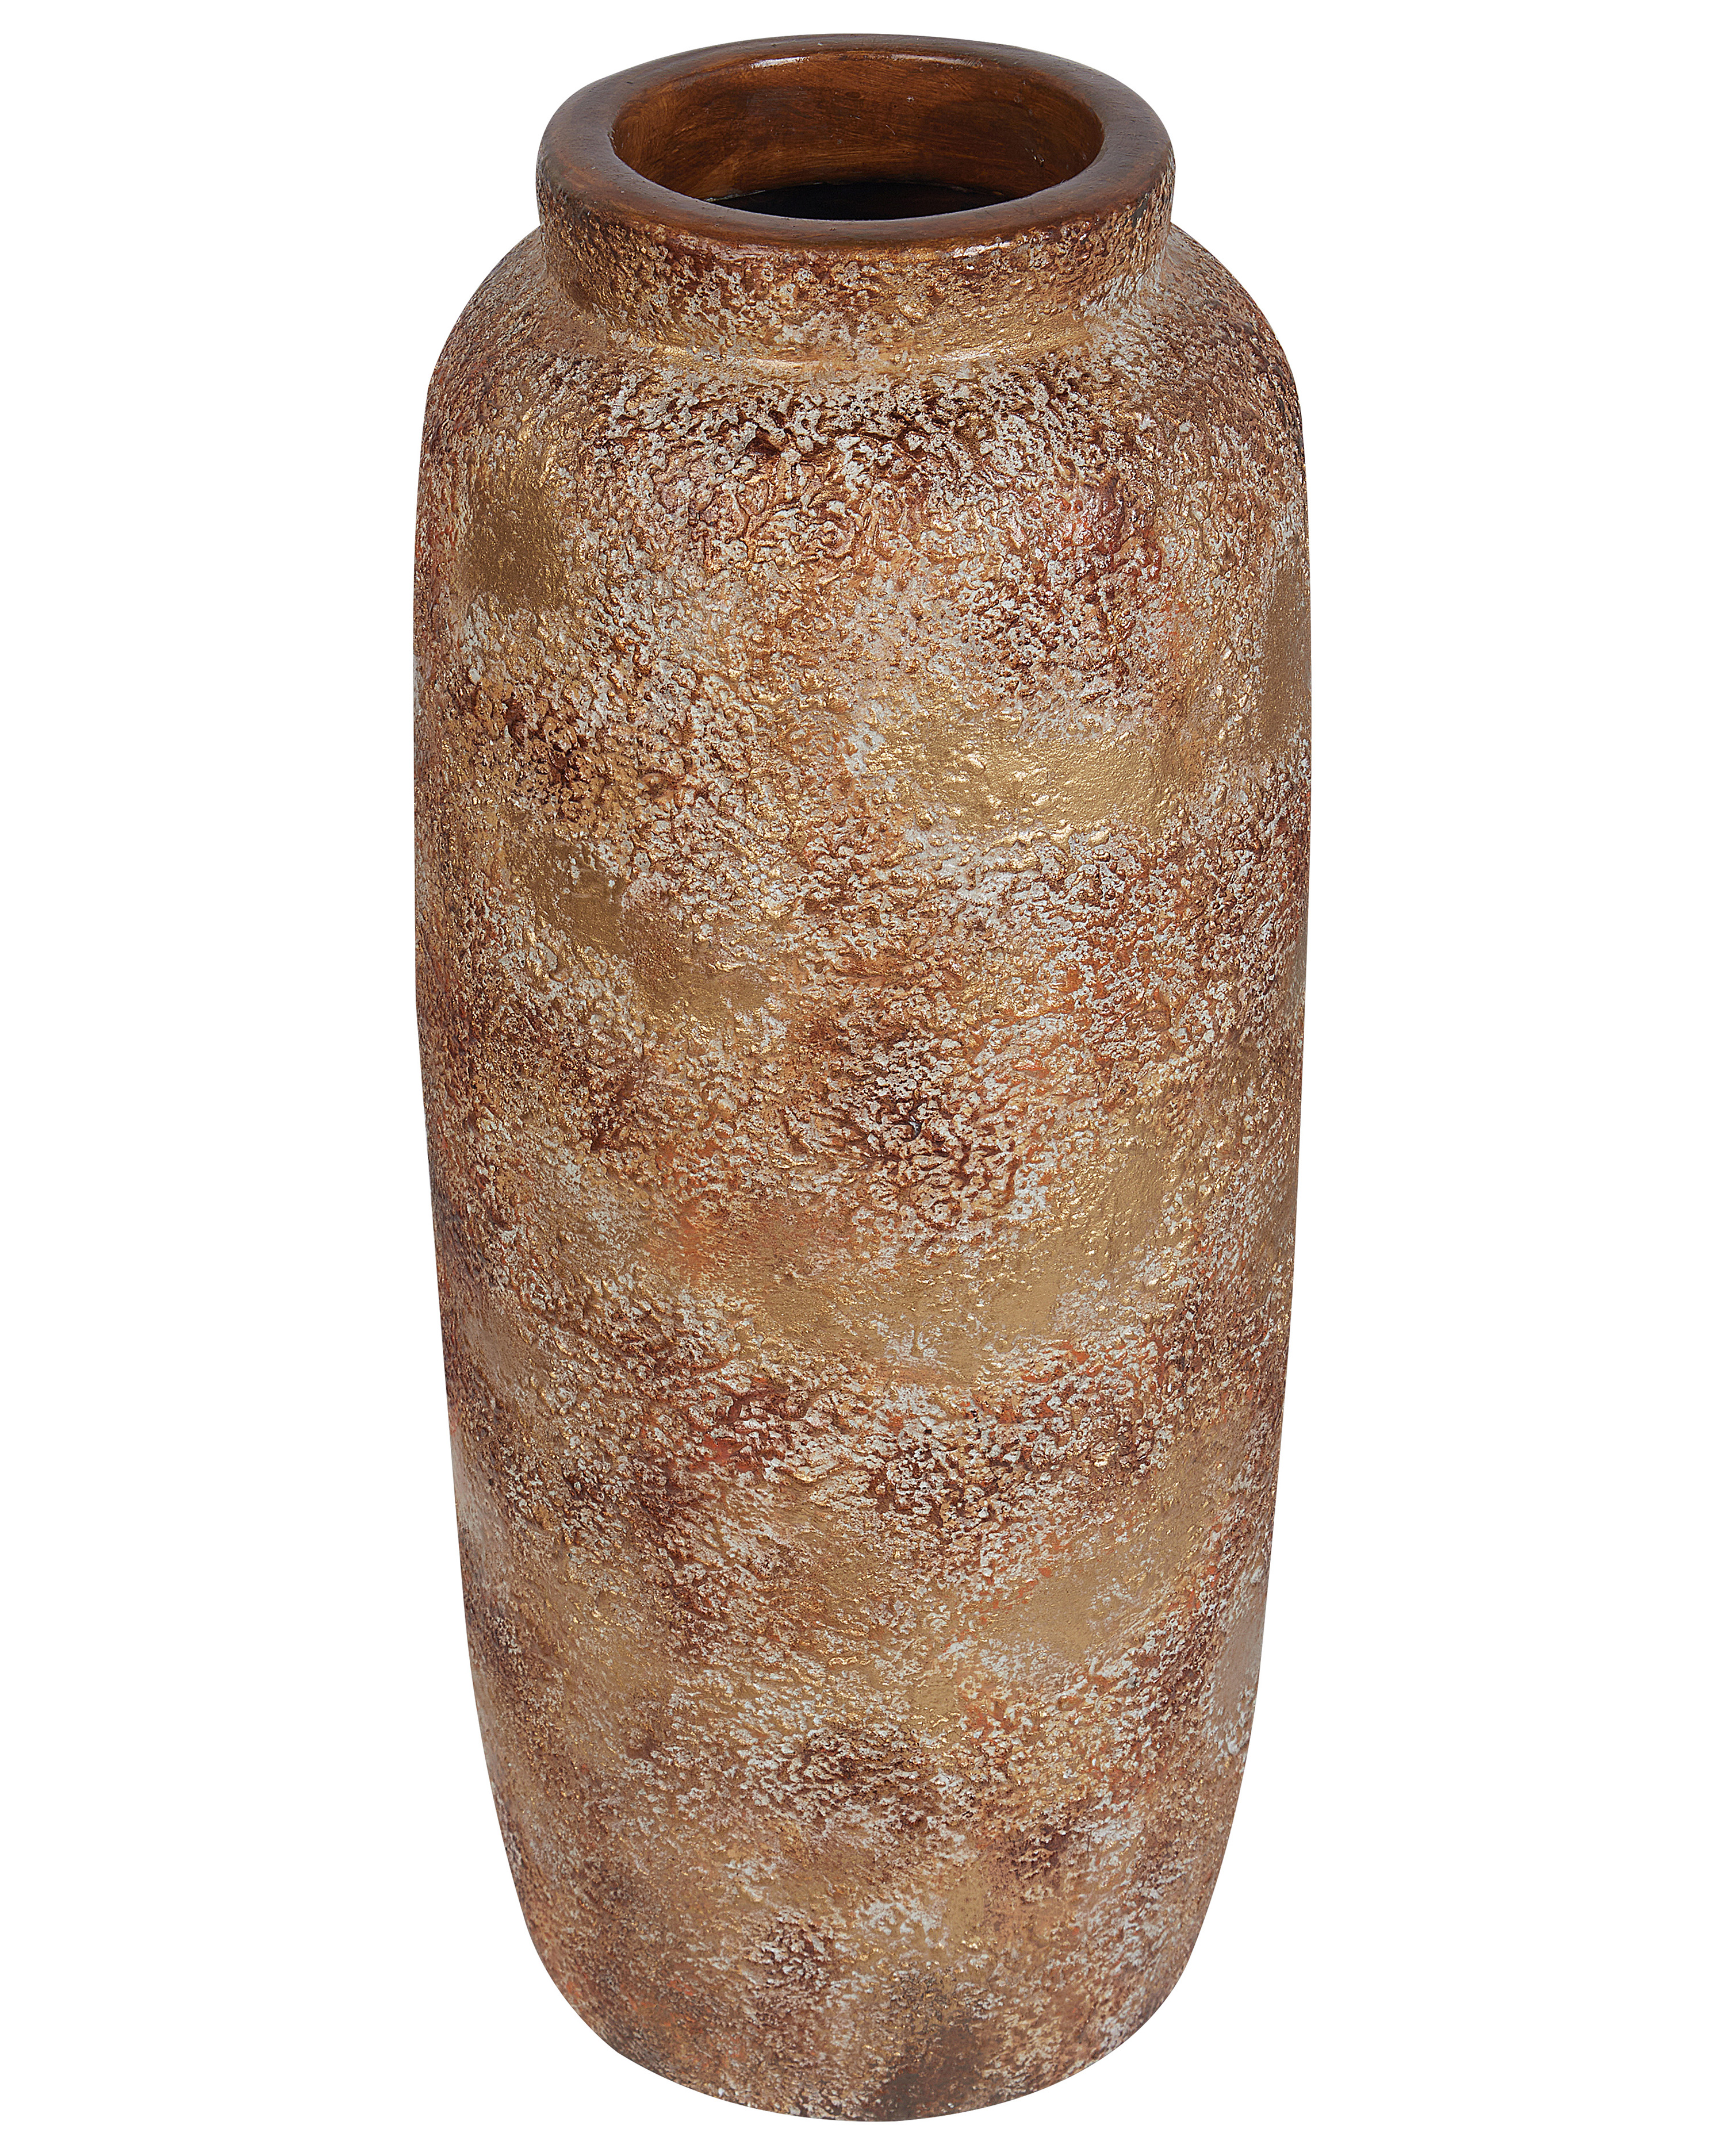 Terakotová dekorativní váza 52 cm hnědá ITANOS_850876